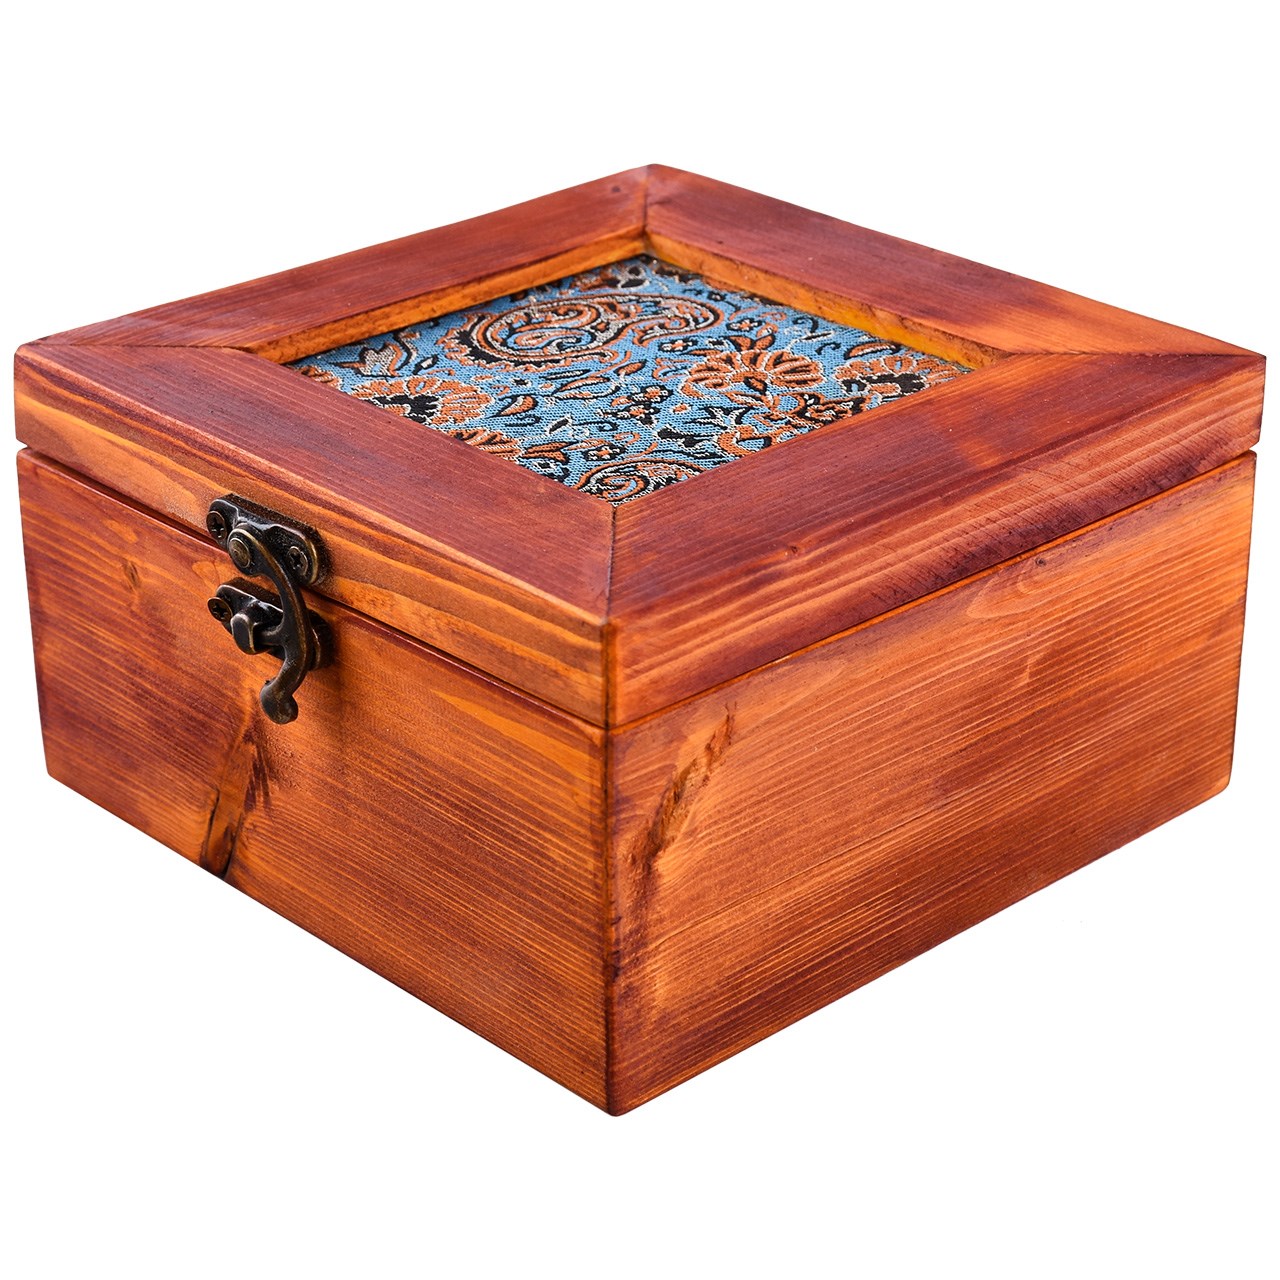 جعبه چوبی  گروه هنری دست استودیو طرح ترمه مربع مدل 01-03 سایز متوسط